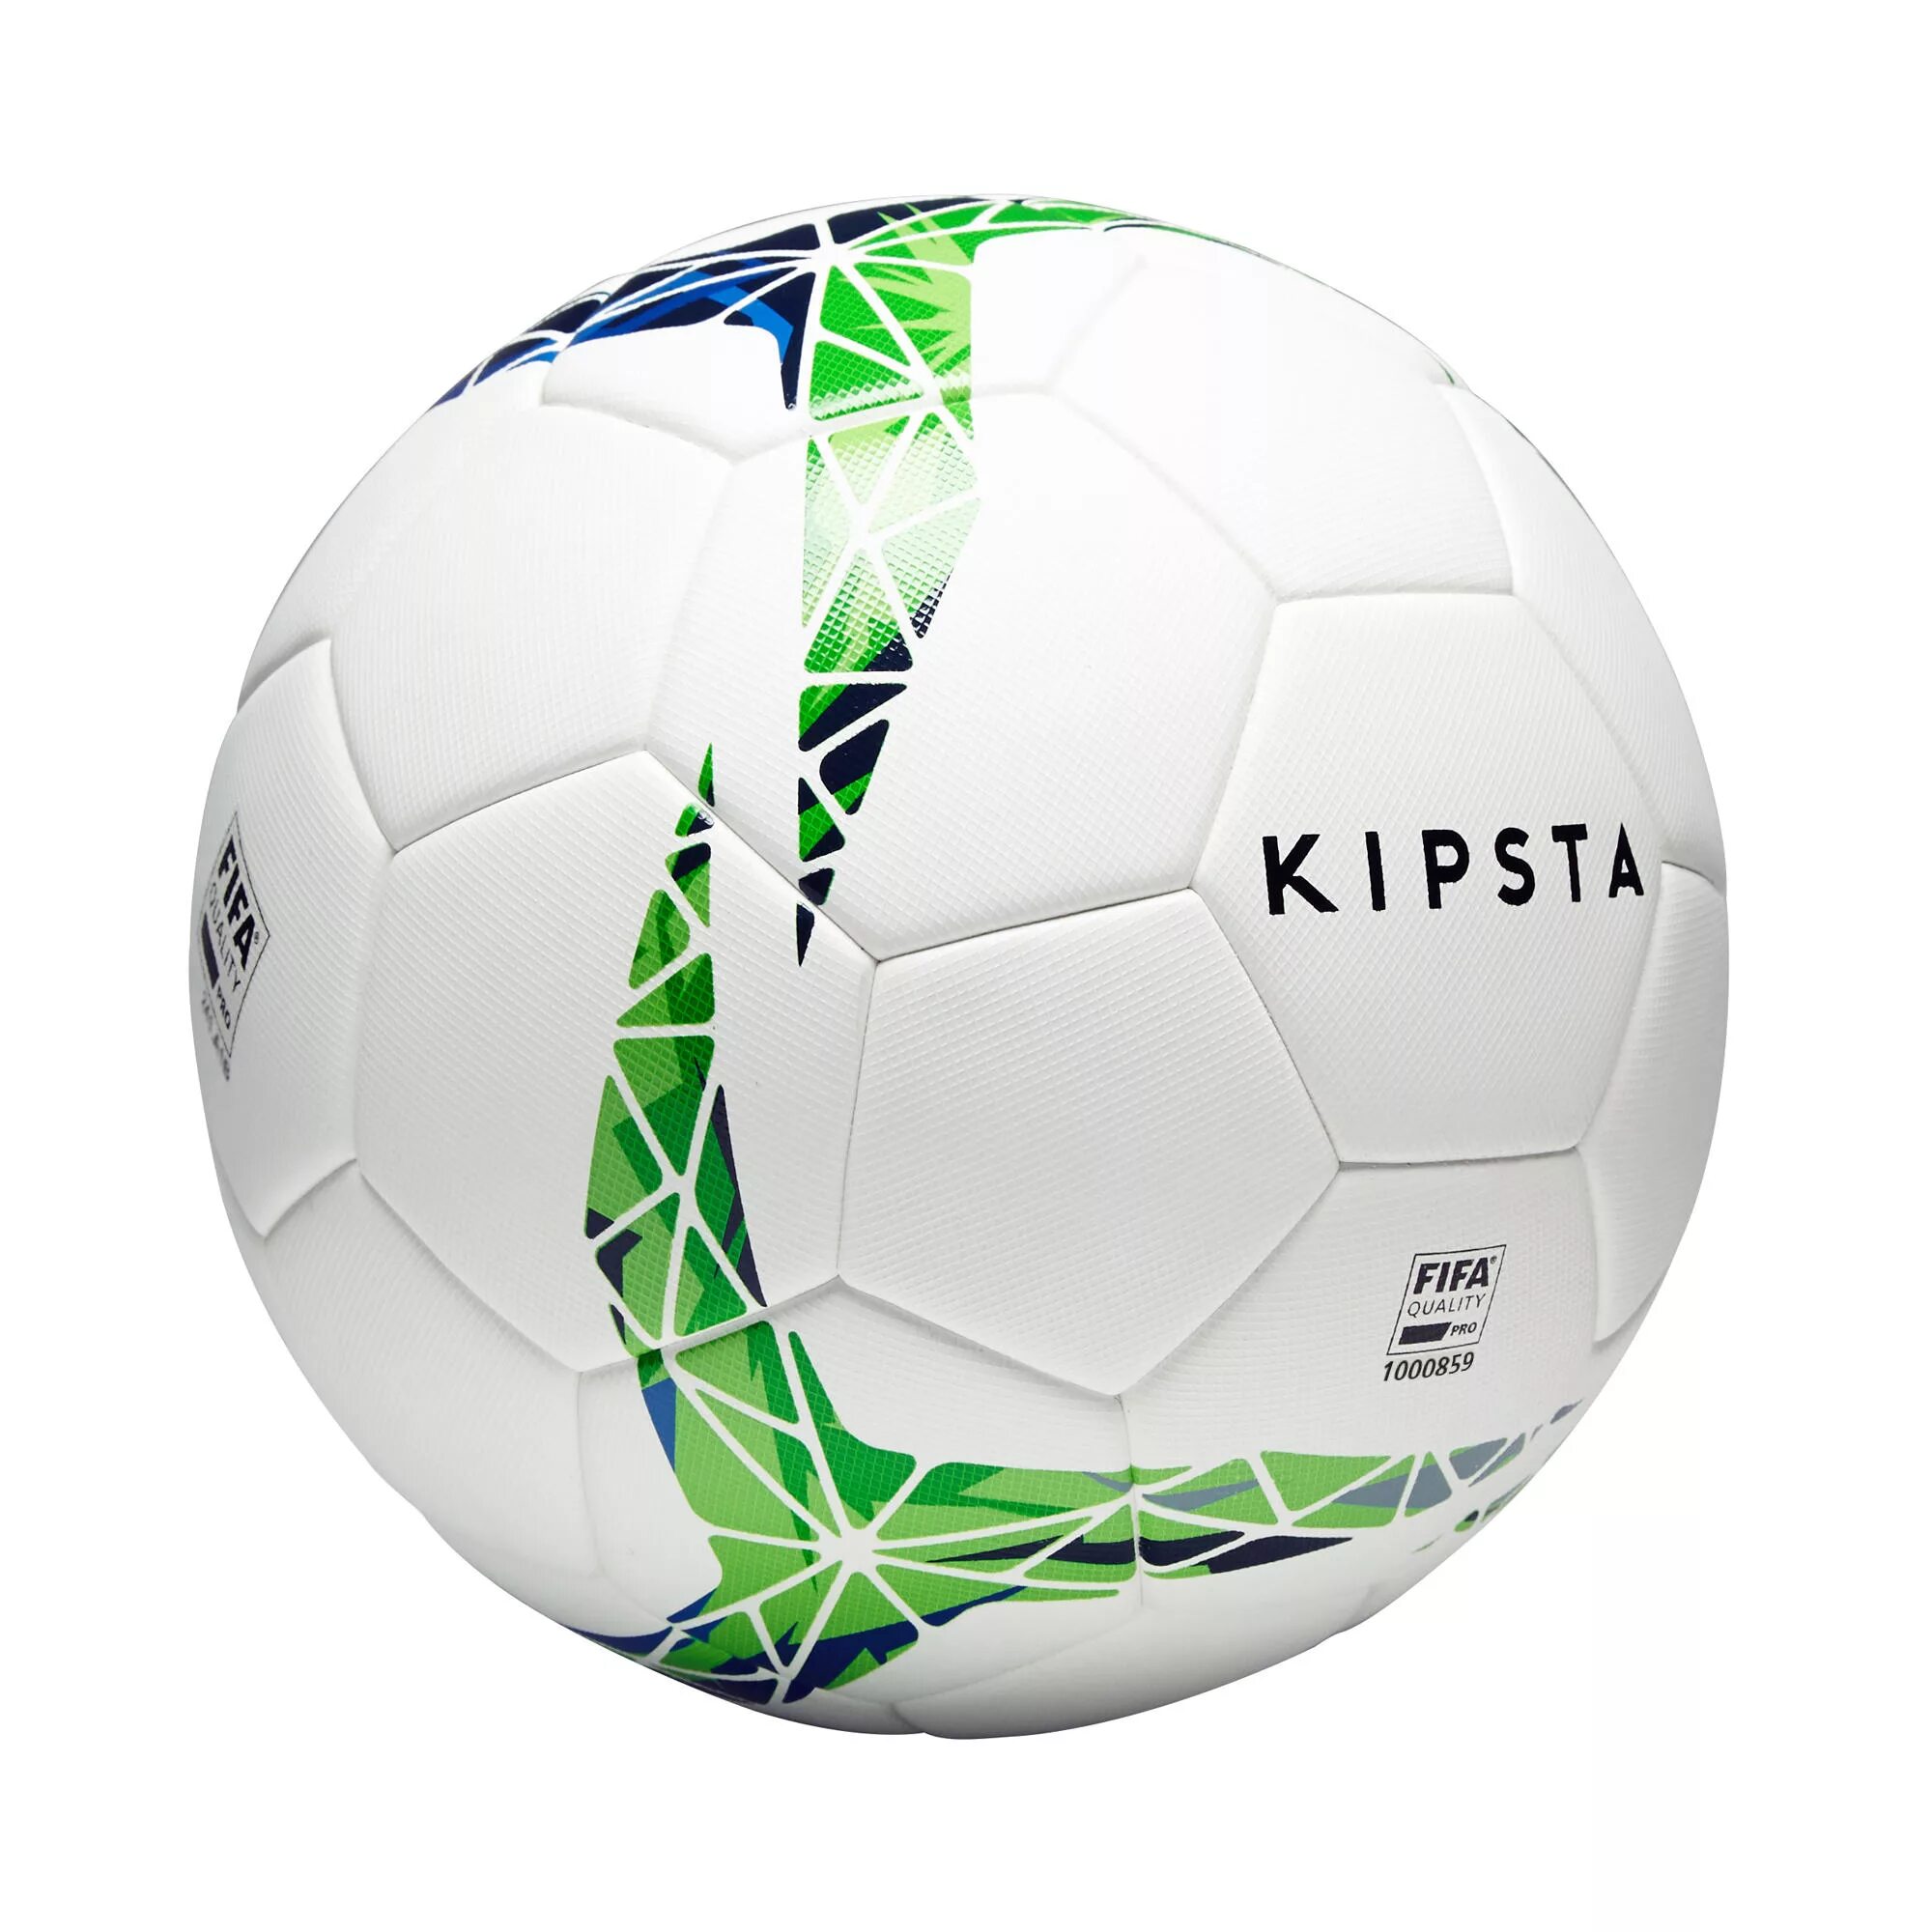 Футбольный мяч fifa. KIPSTA мяч футбольный f900. Футбольный мяч KIPSTA f900 FIFA Pro. Мяч футбольный KIPSTA 5. Футбольный мини мяч Ballground 100 KIPSTA.